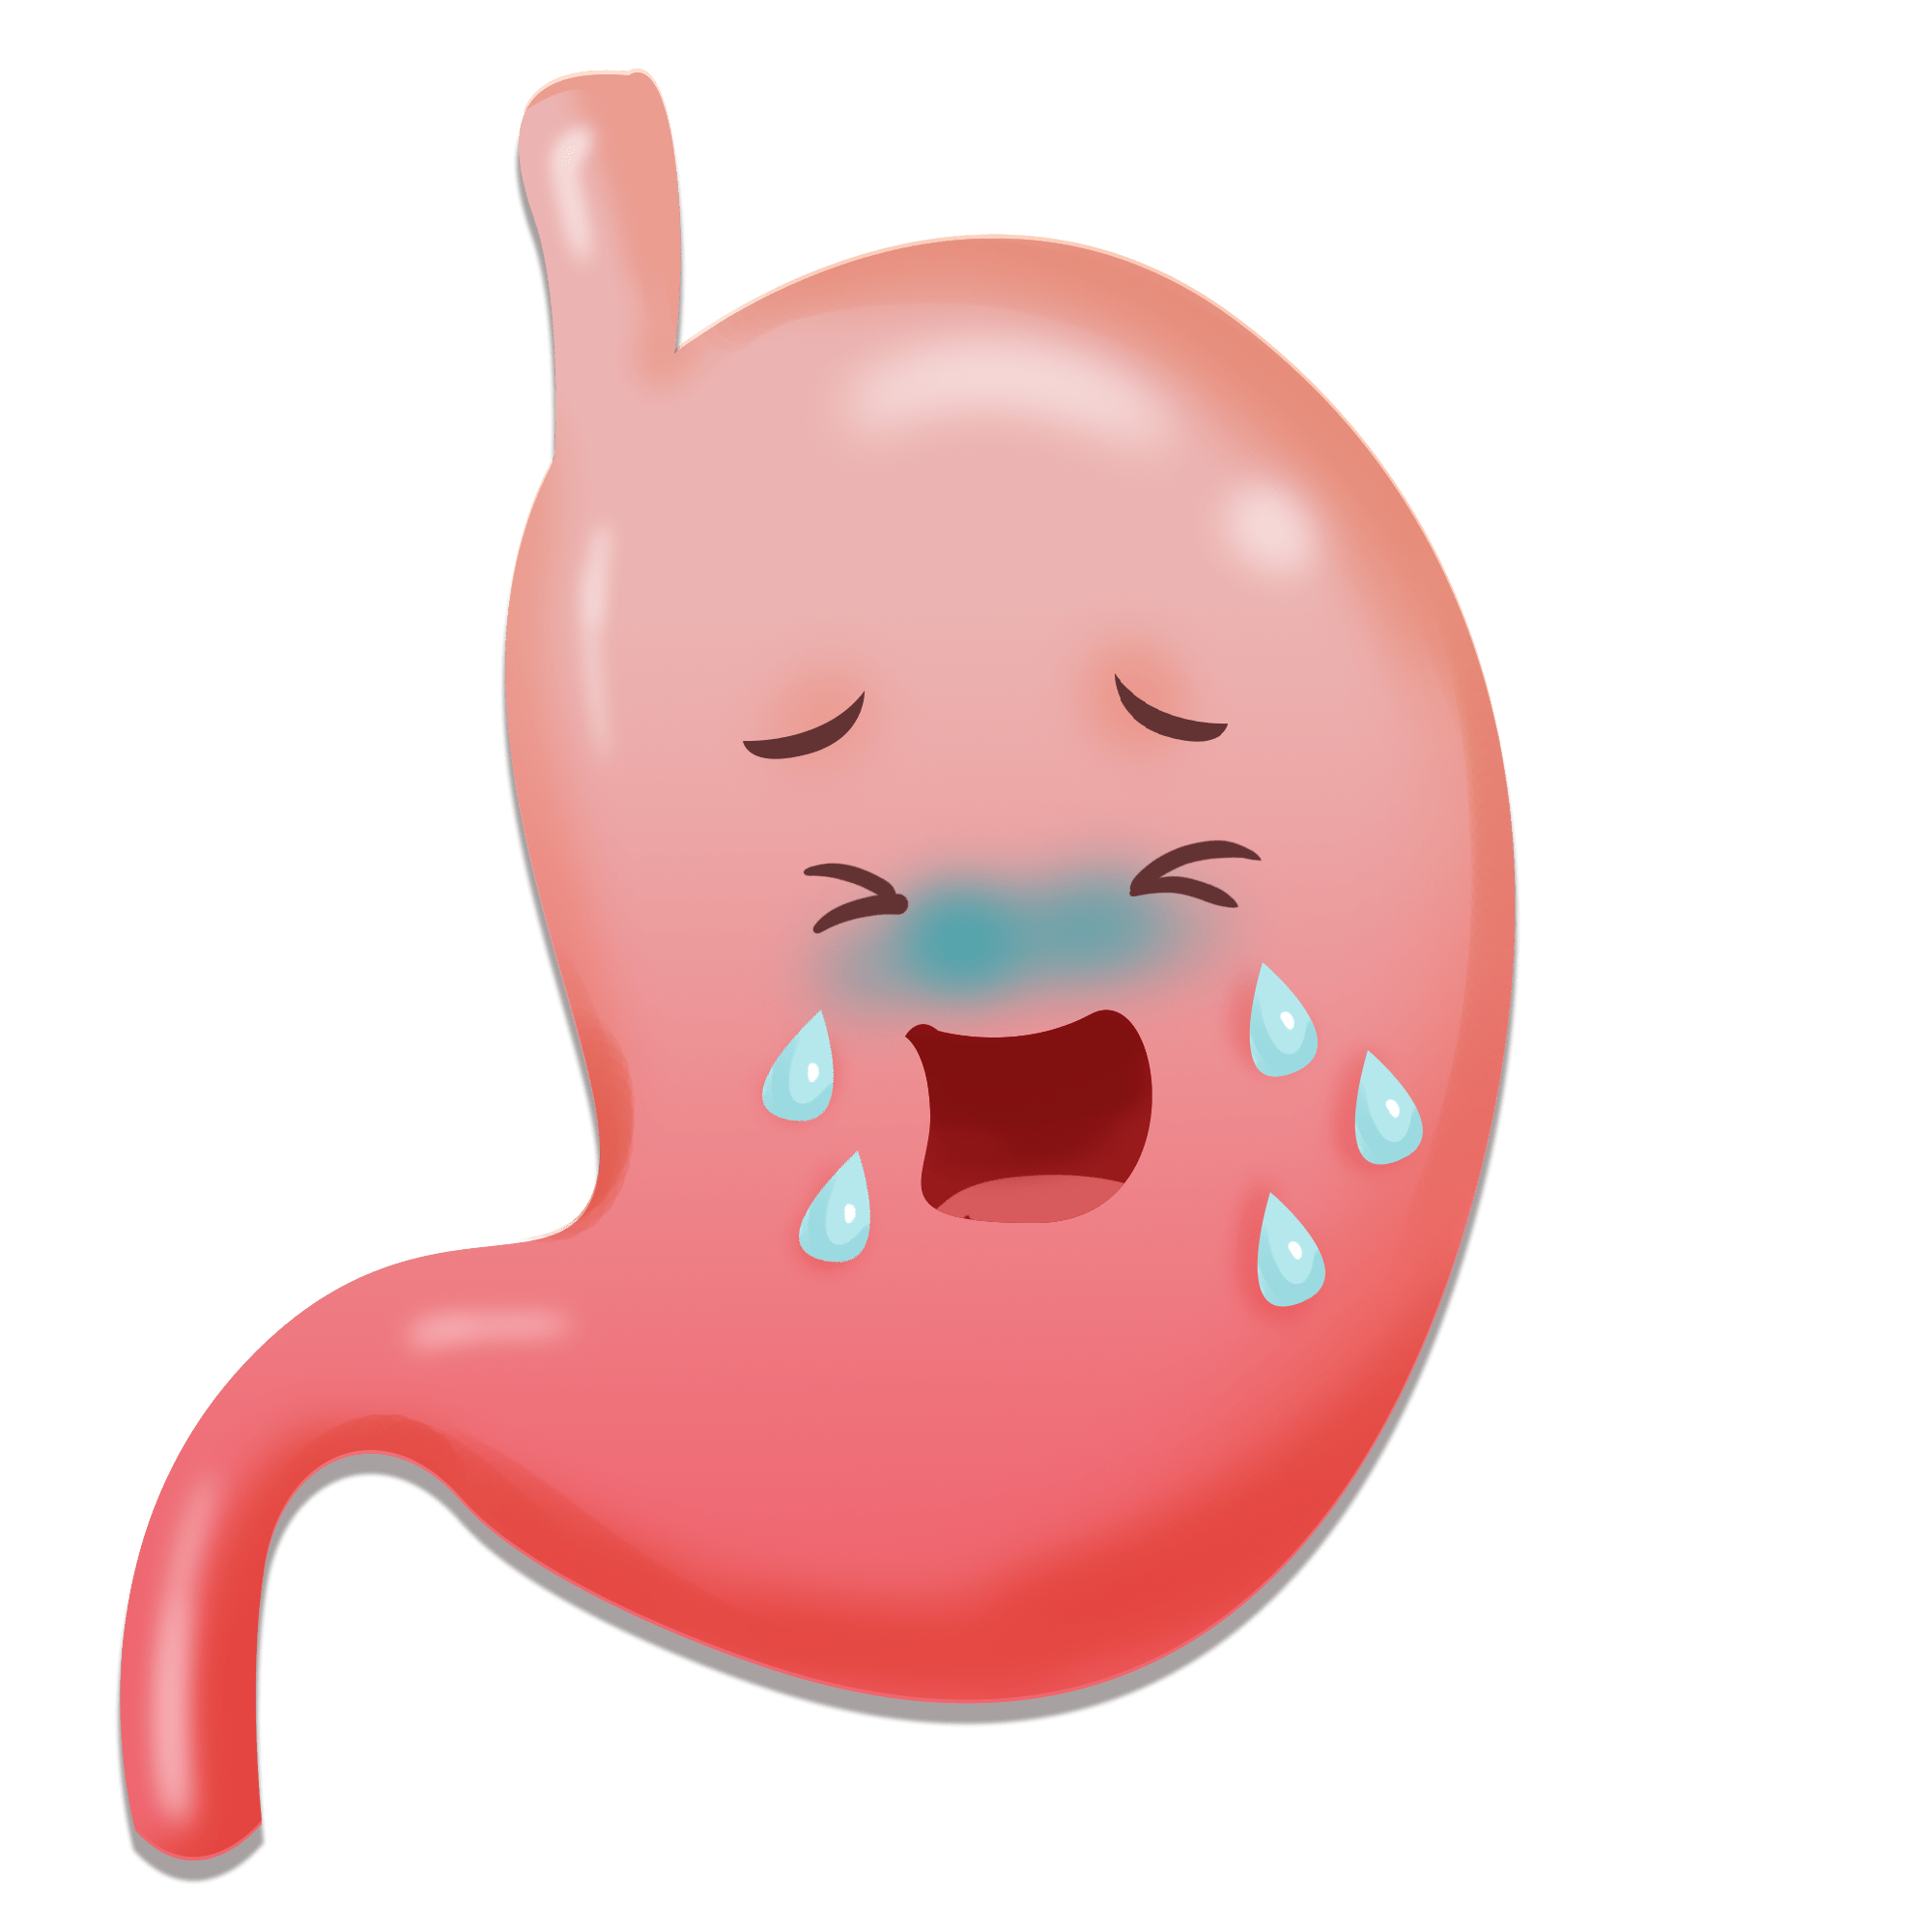 肠胃炎图片 卡通图片